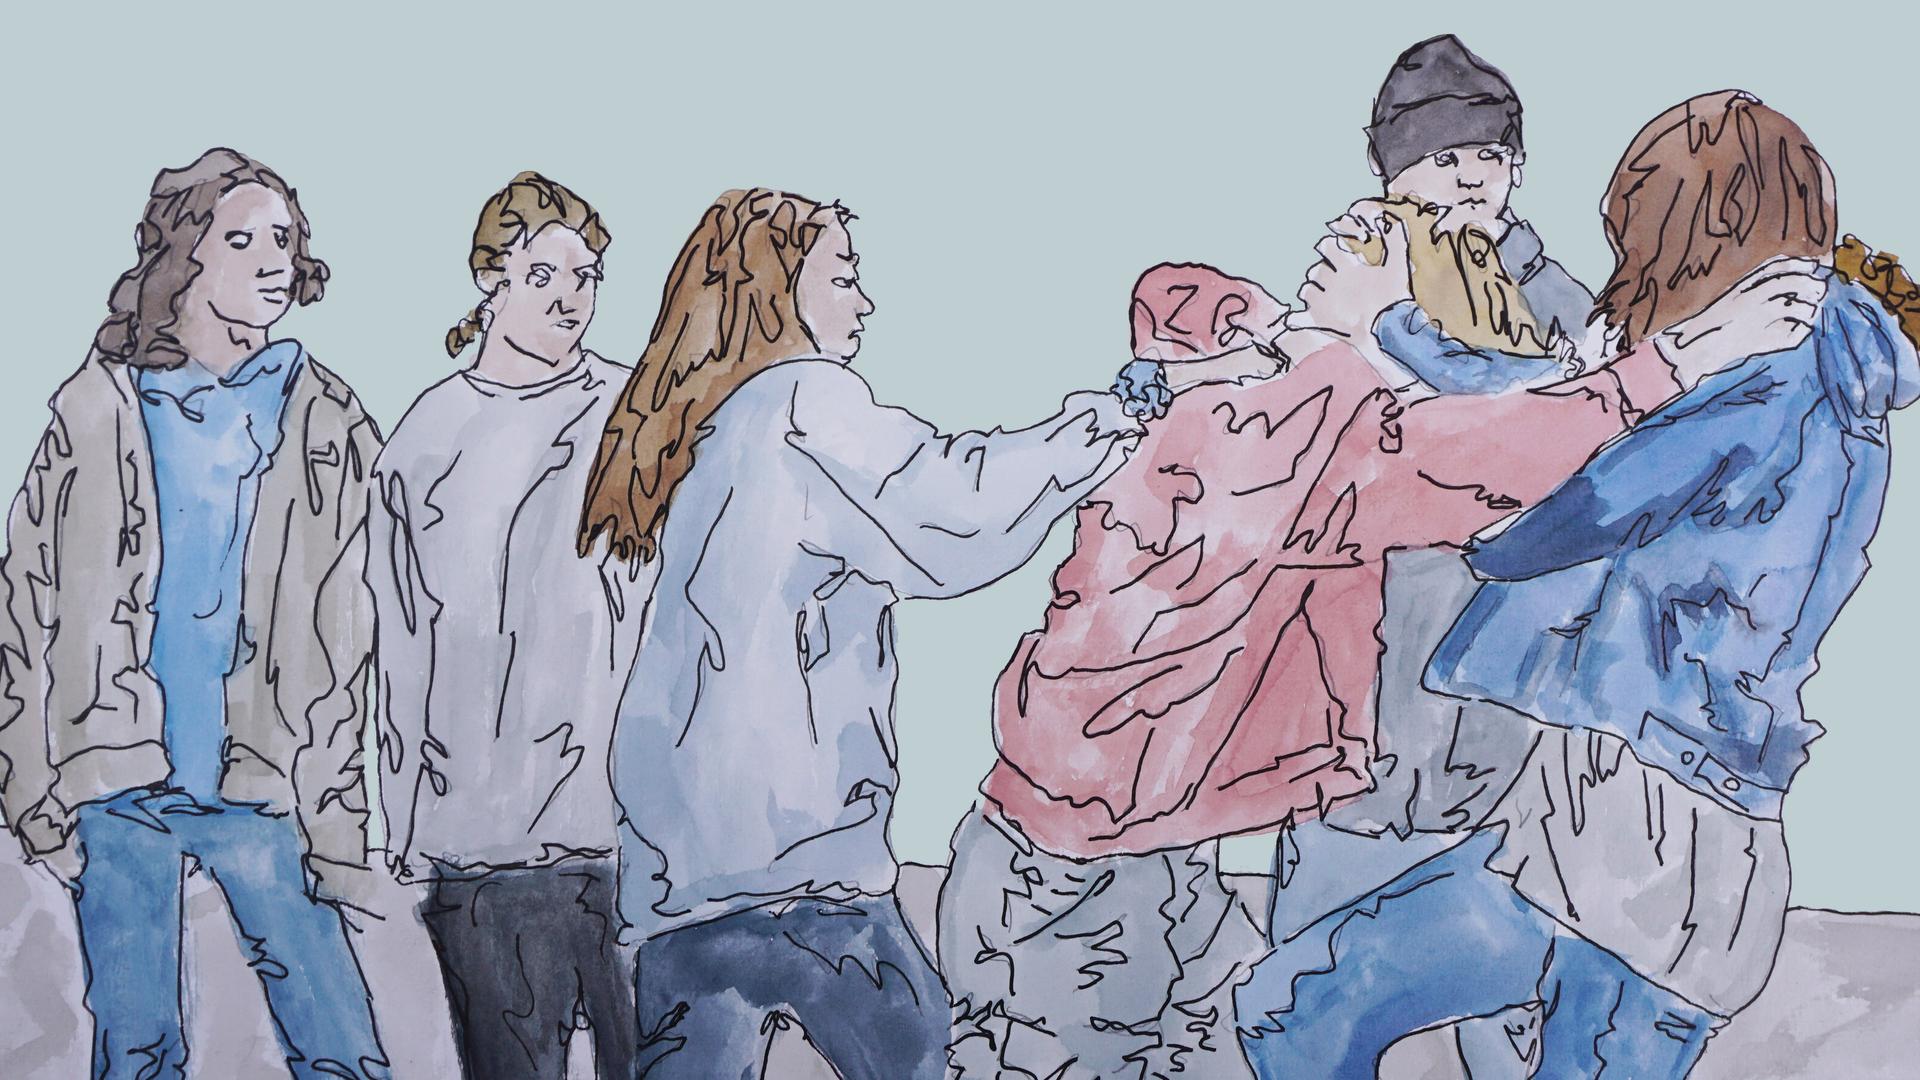 Zeichnung zu Folge 3: Jugendliche auf dem Schulhof bei einer Rauferei.